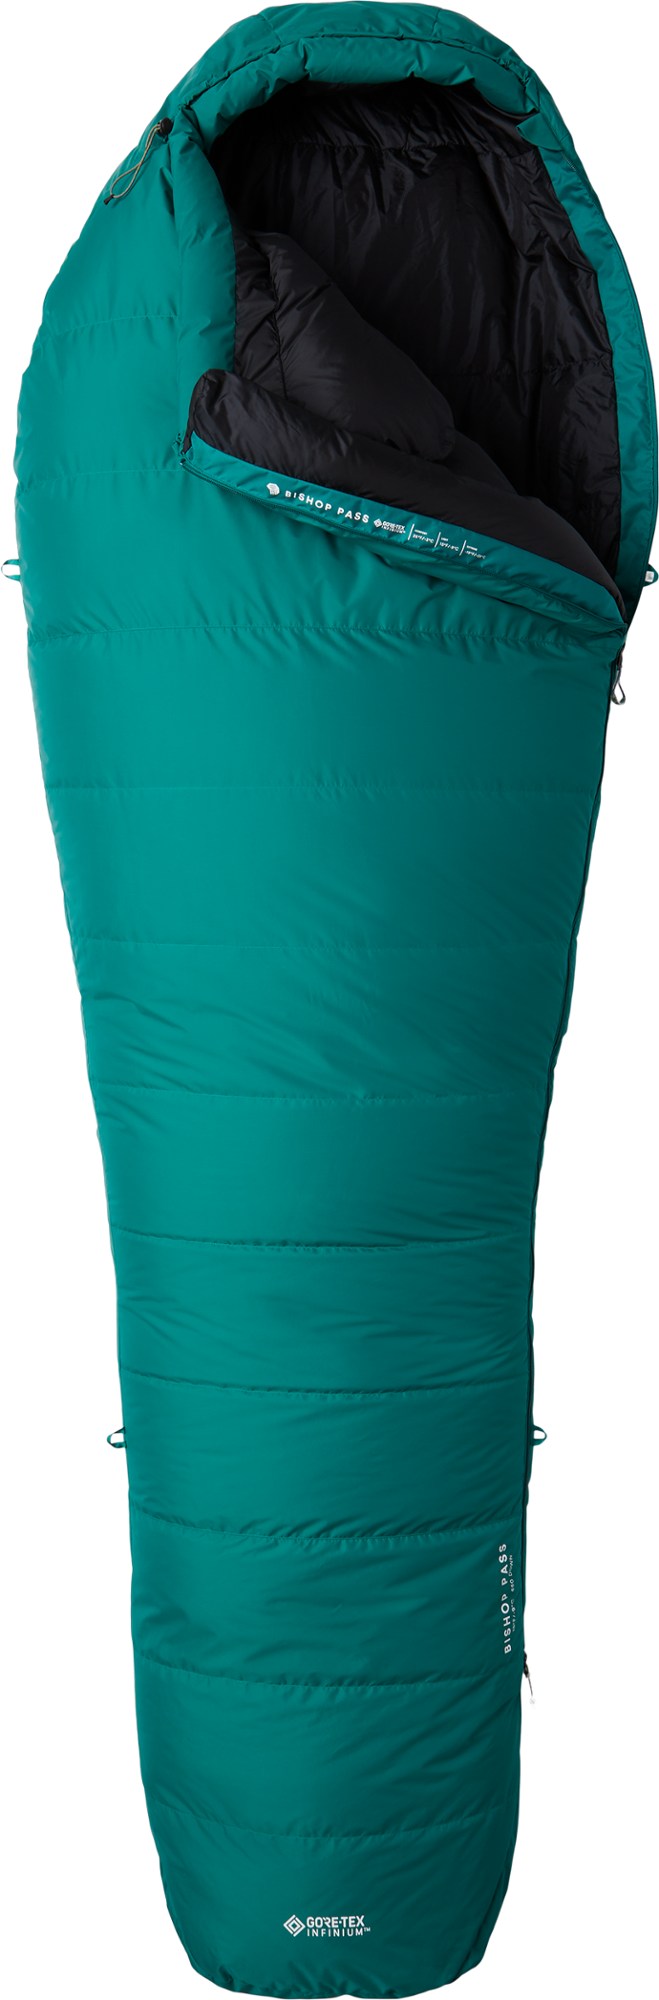 цена Спальный мешок Bishop Pass GORE-TEX 15 Mountain Hardwear, зеленый